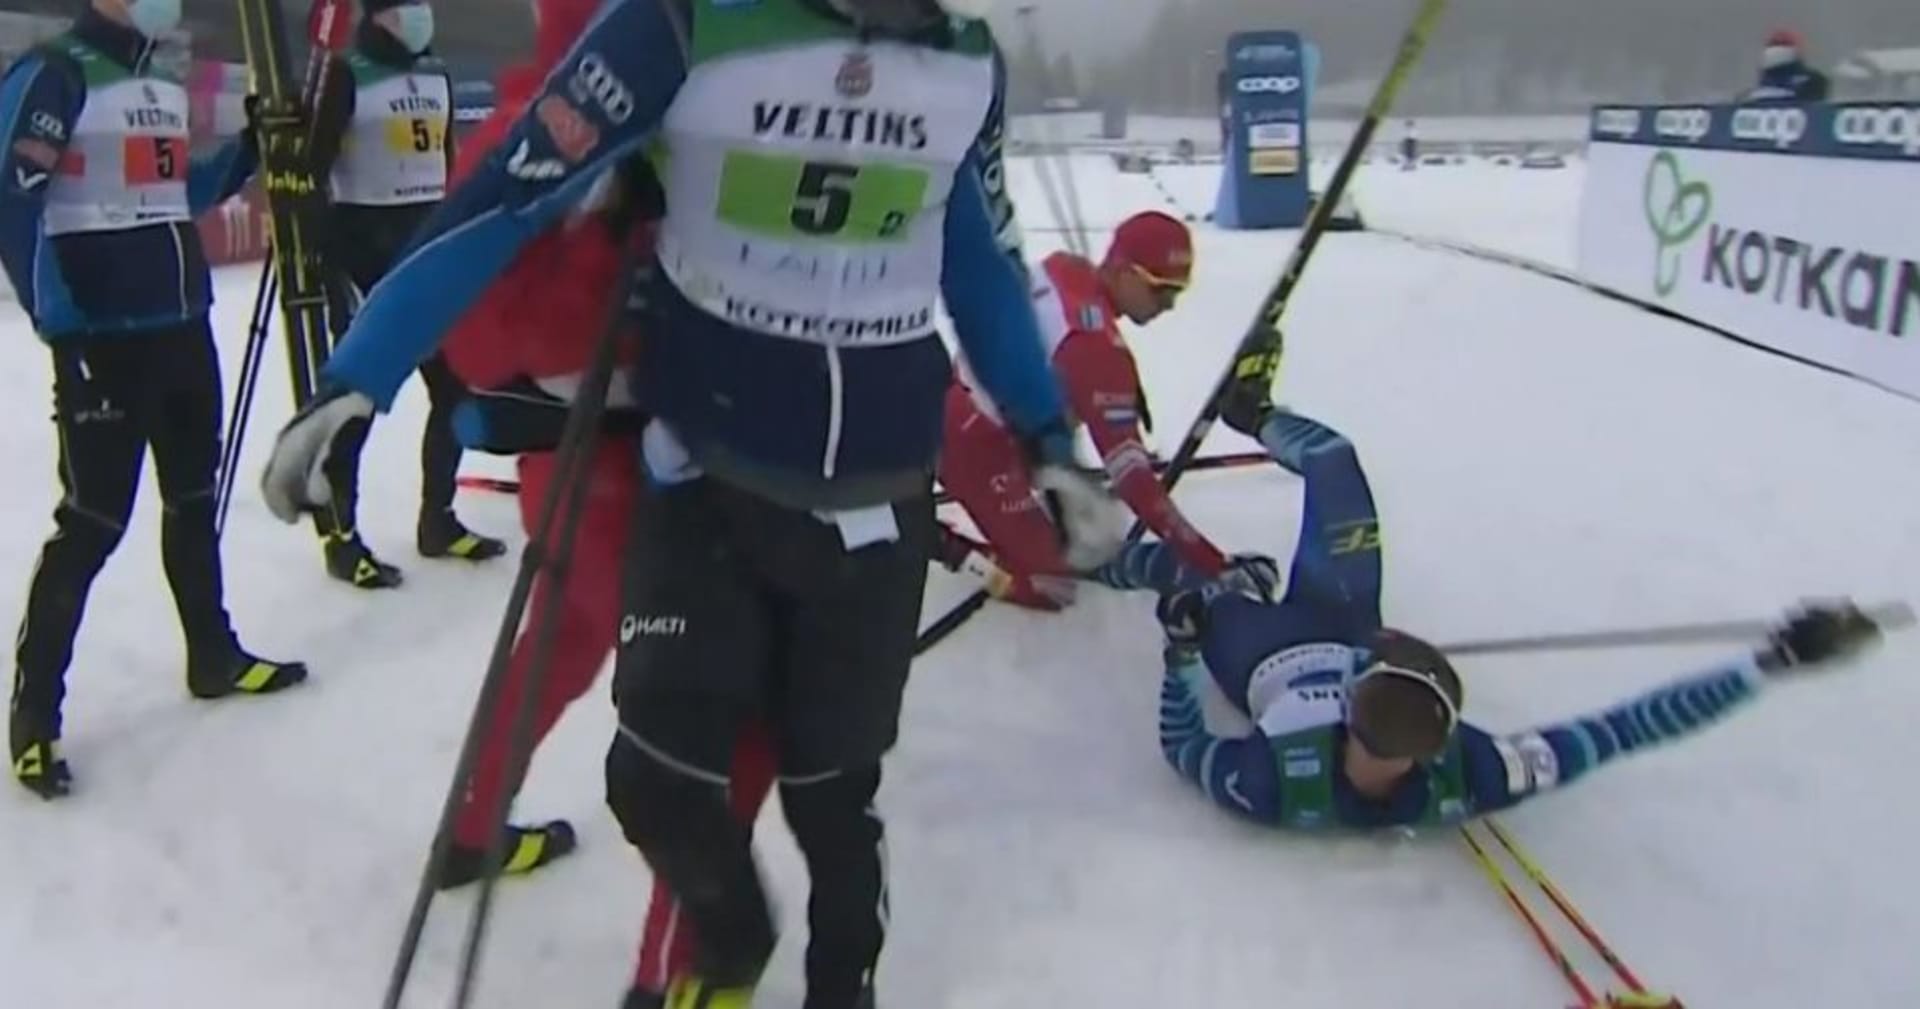 Joni Mäki se ocitl v cíli na zemi poté, co do něj ostře najel frustrovaný Alexandr Bolšunov (druhý zprava).